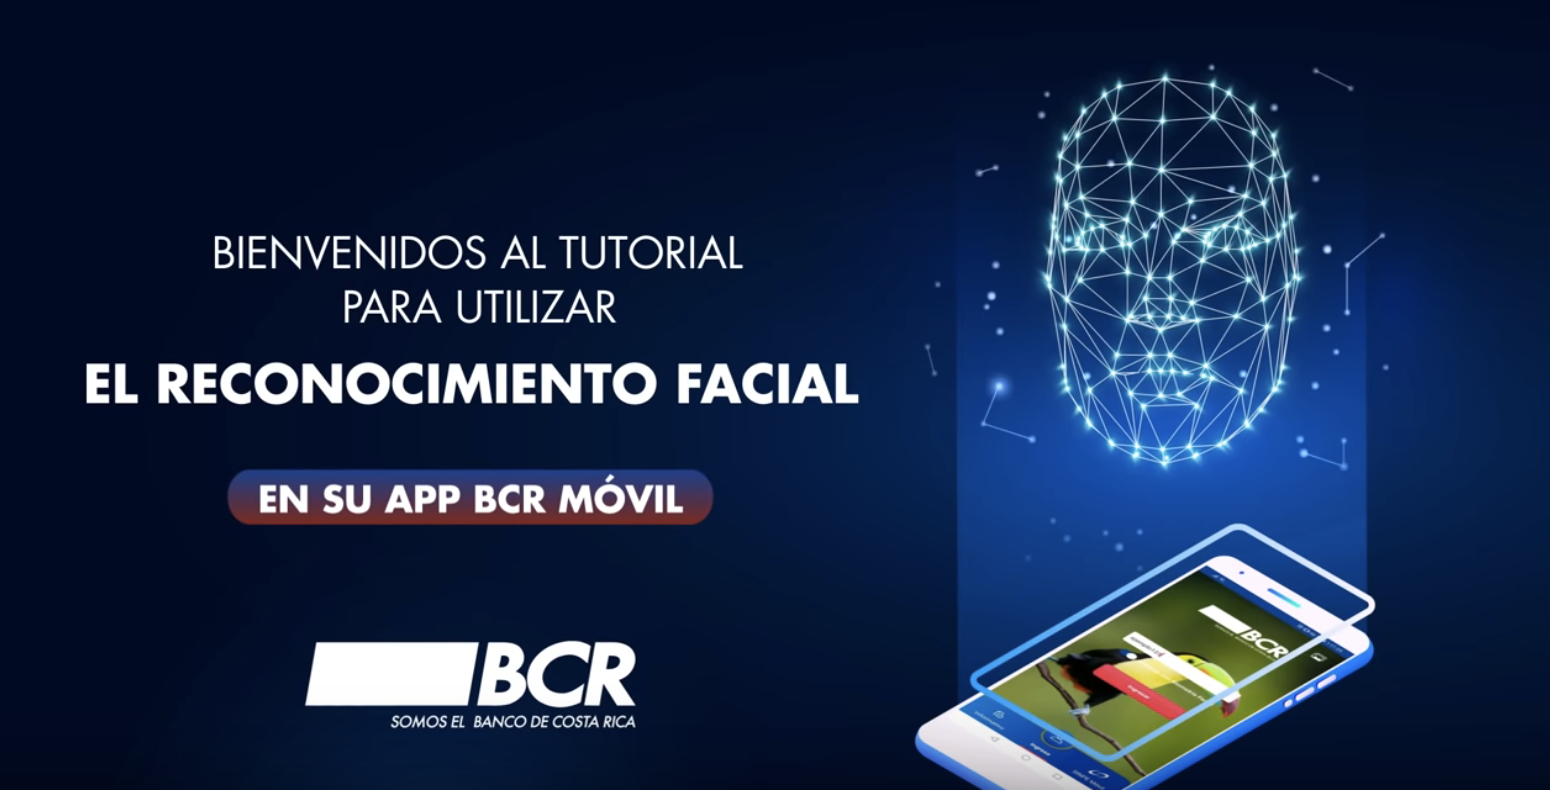 Banco de Costa Rica ofrece Biometría Facial como mecanismo de seguridad en su Aplicación Móvil